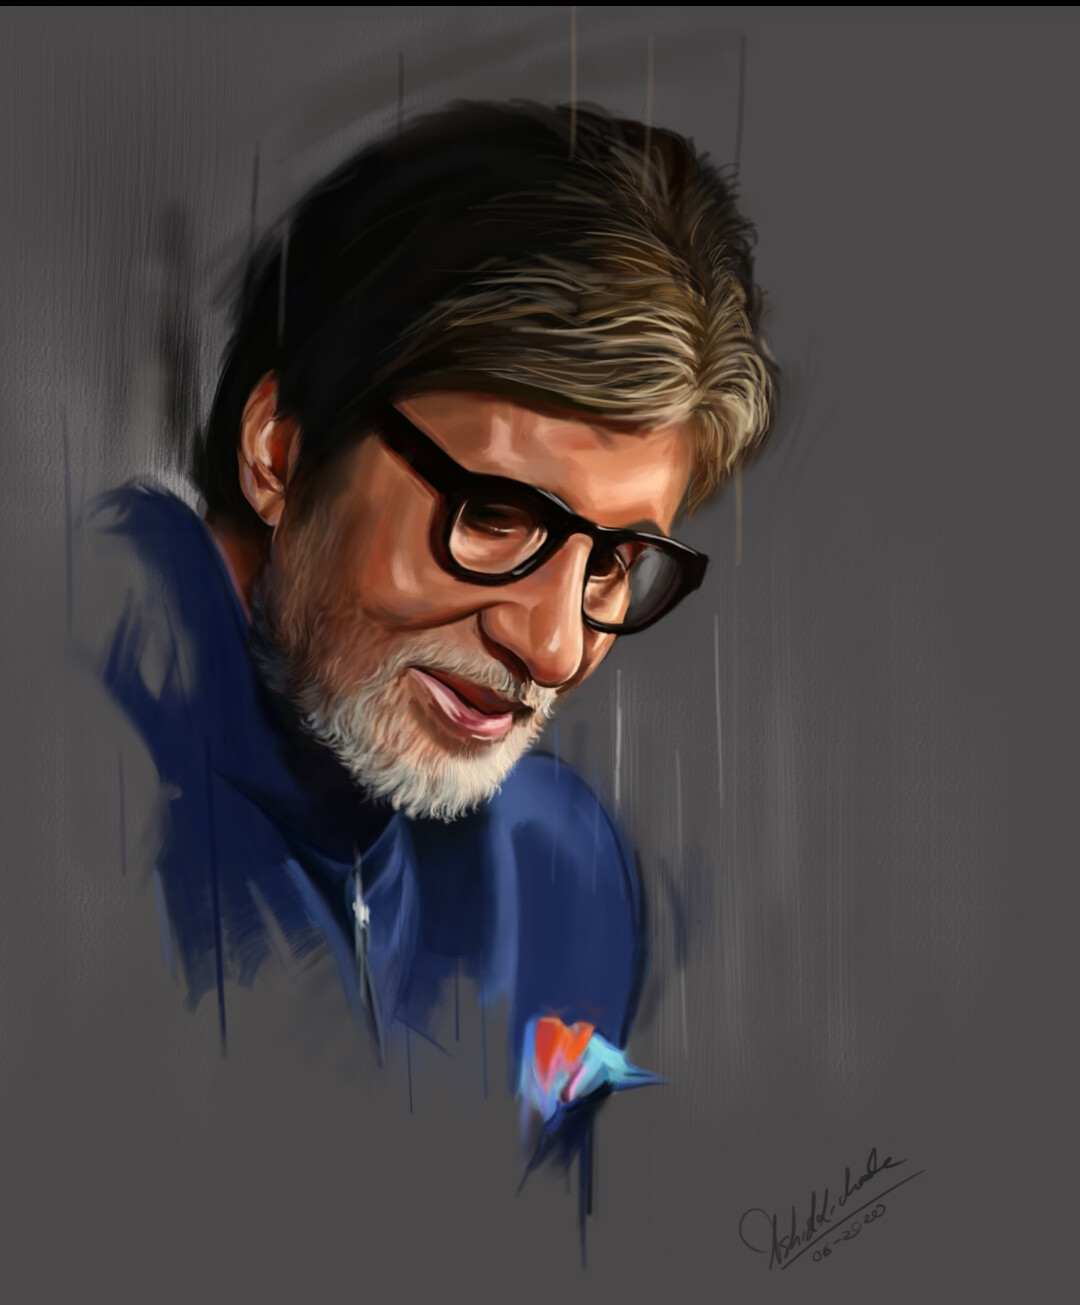 Drawing Amitabh Bachchan | Pencil sketch - YouTube